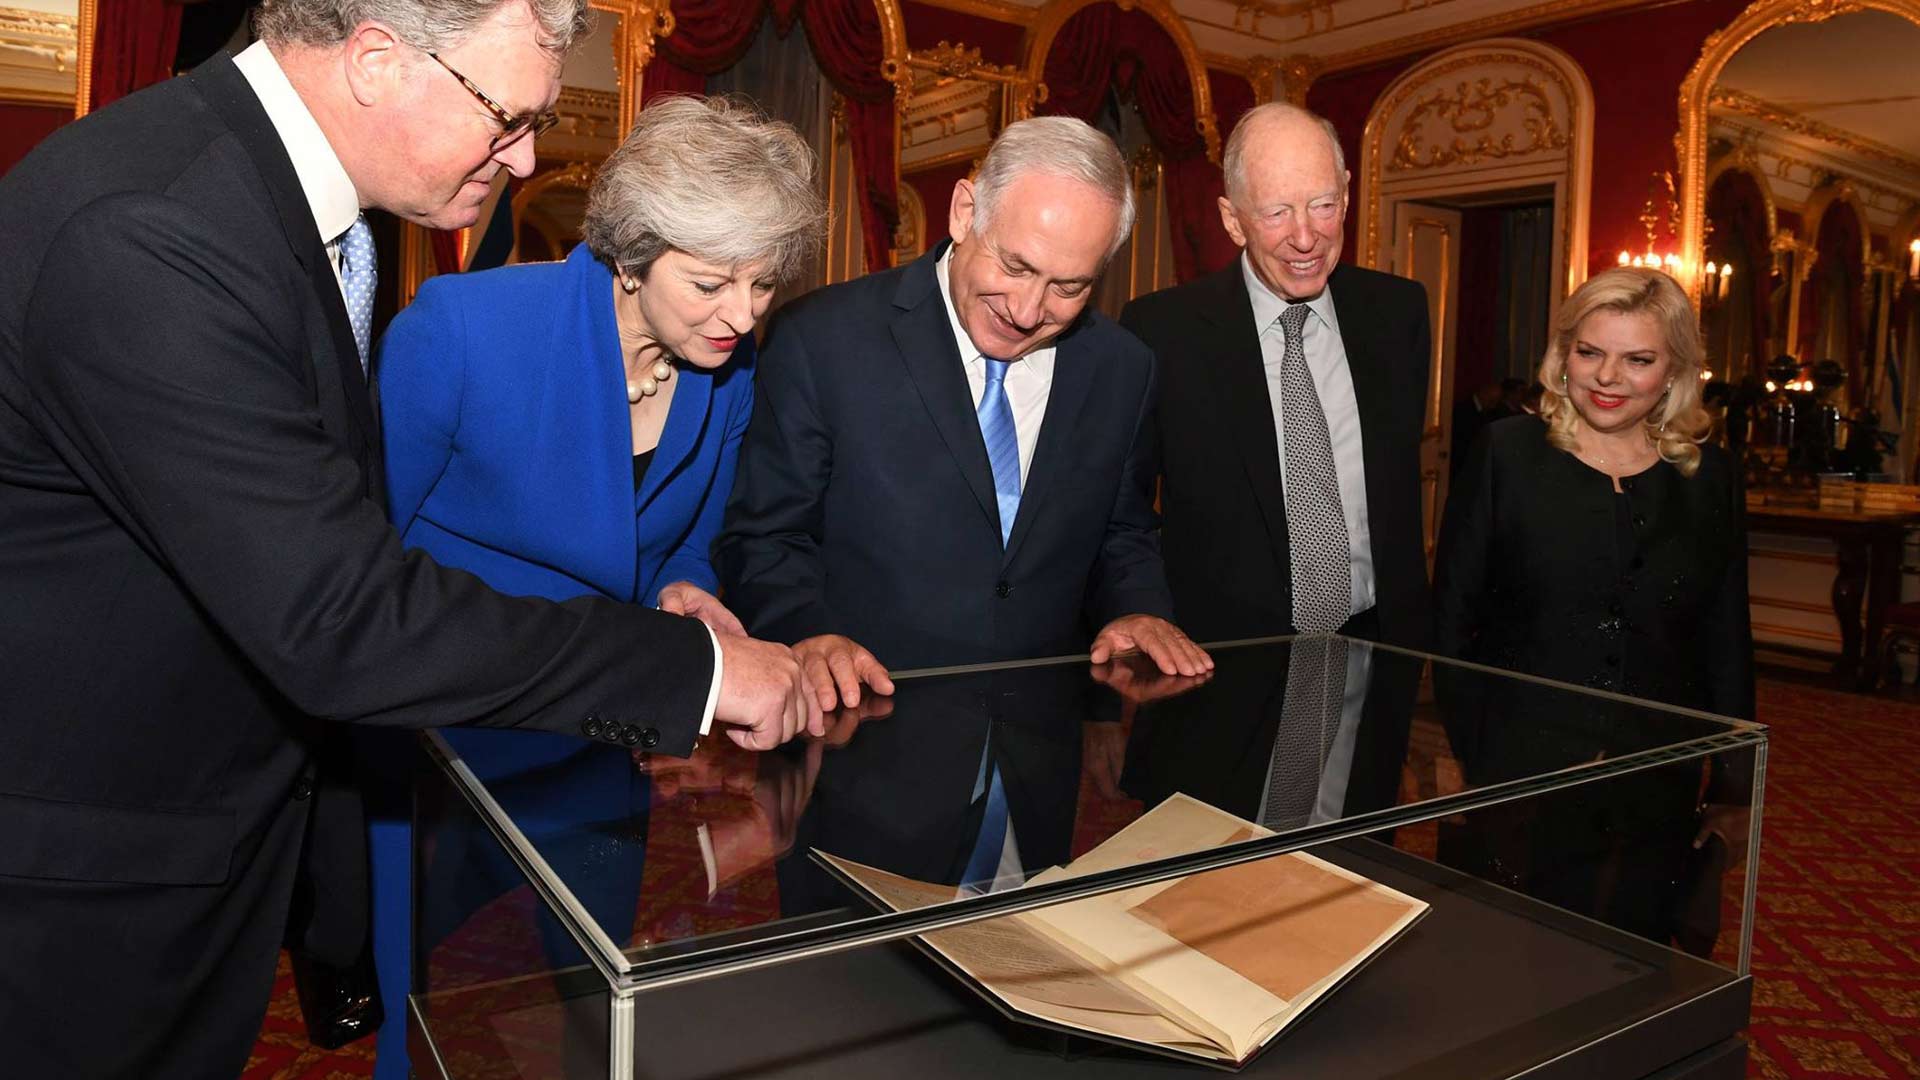 May (2. v. l.) und Netanjahu (3. v. l.) begutachten das Originaldokument der Balfour-Erklärung